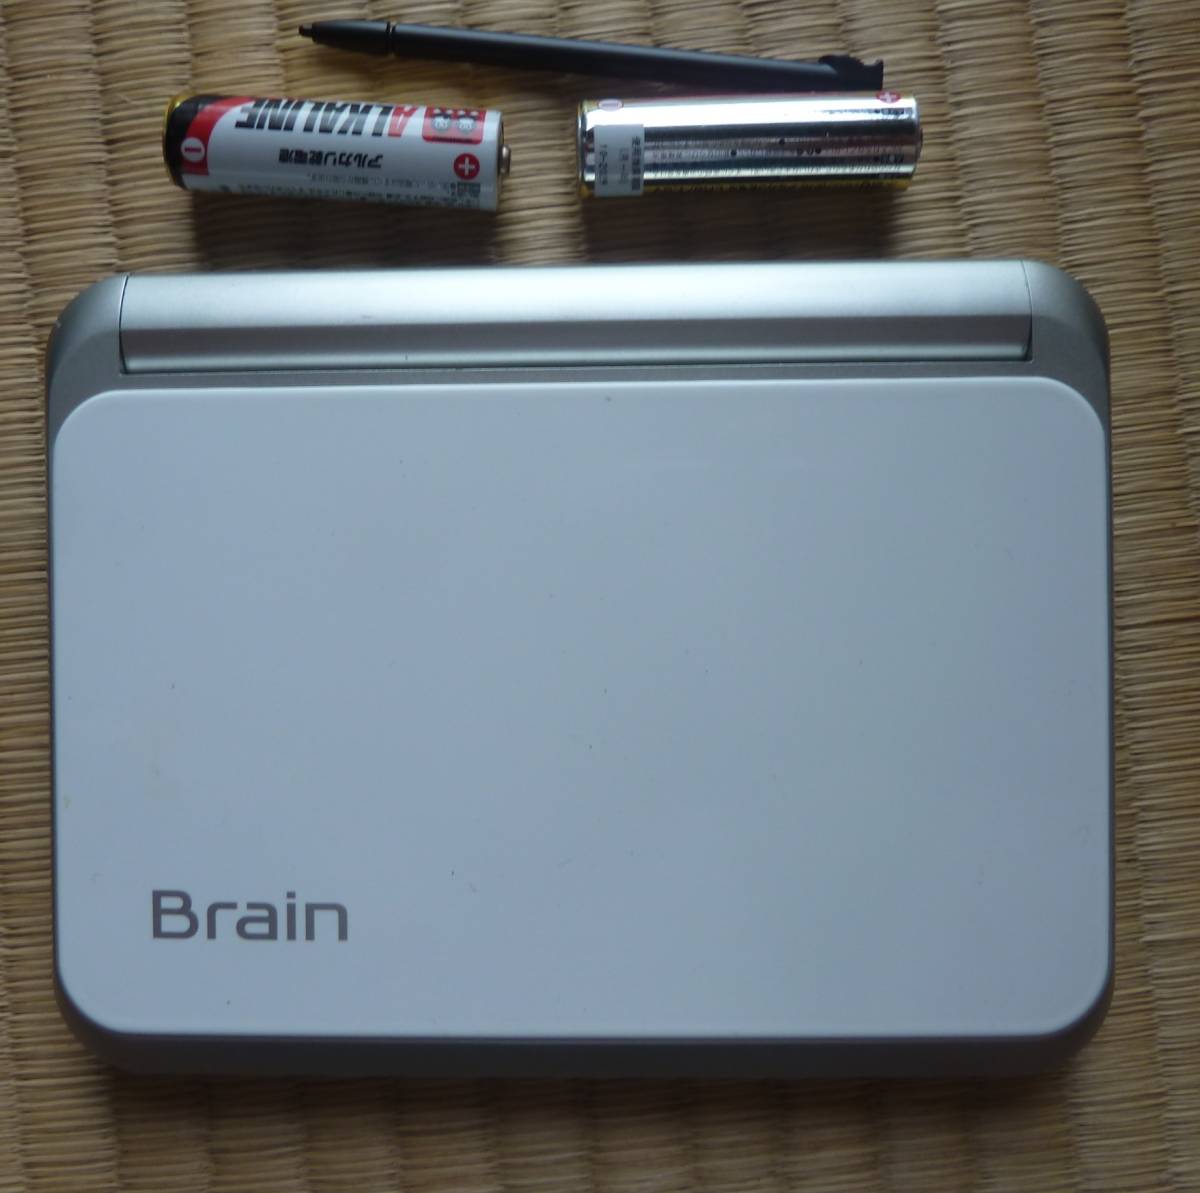 42)カラー電子辞書 SHARP Brain PW-A-7000 ホワイトのきれいなお得意品